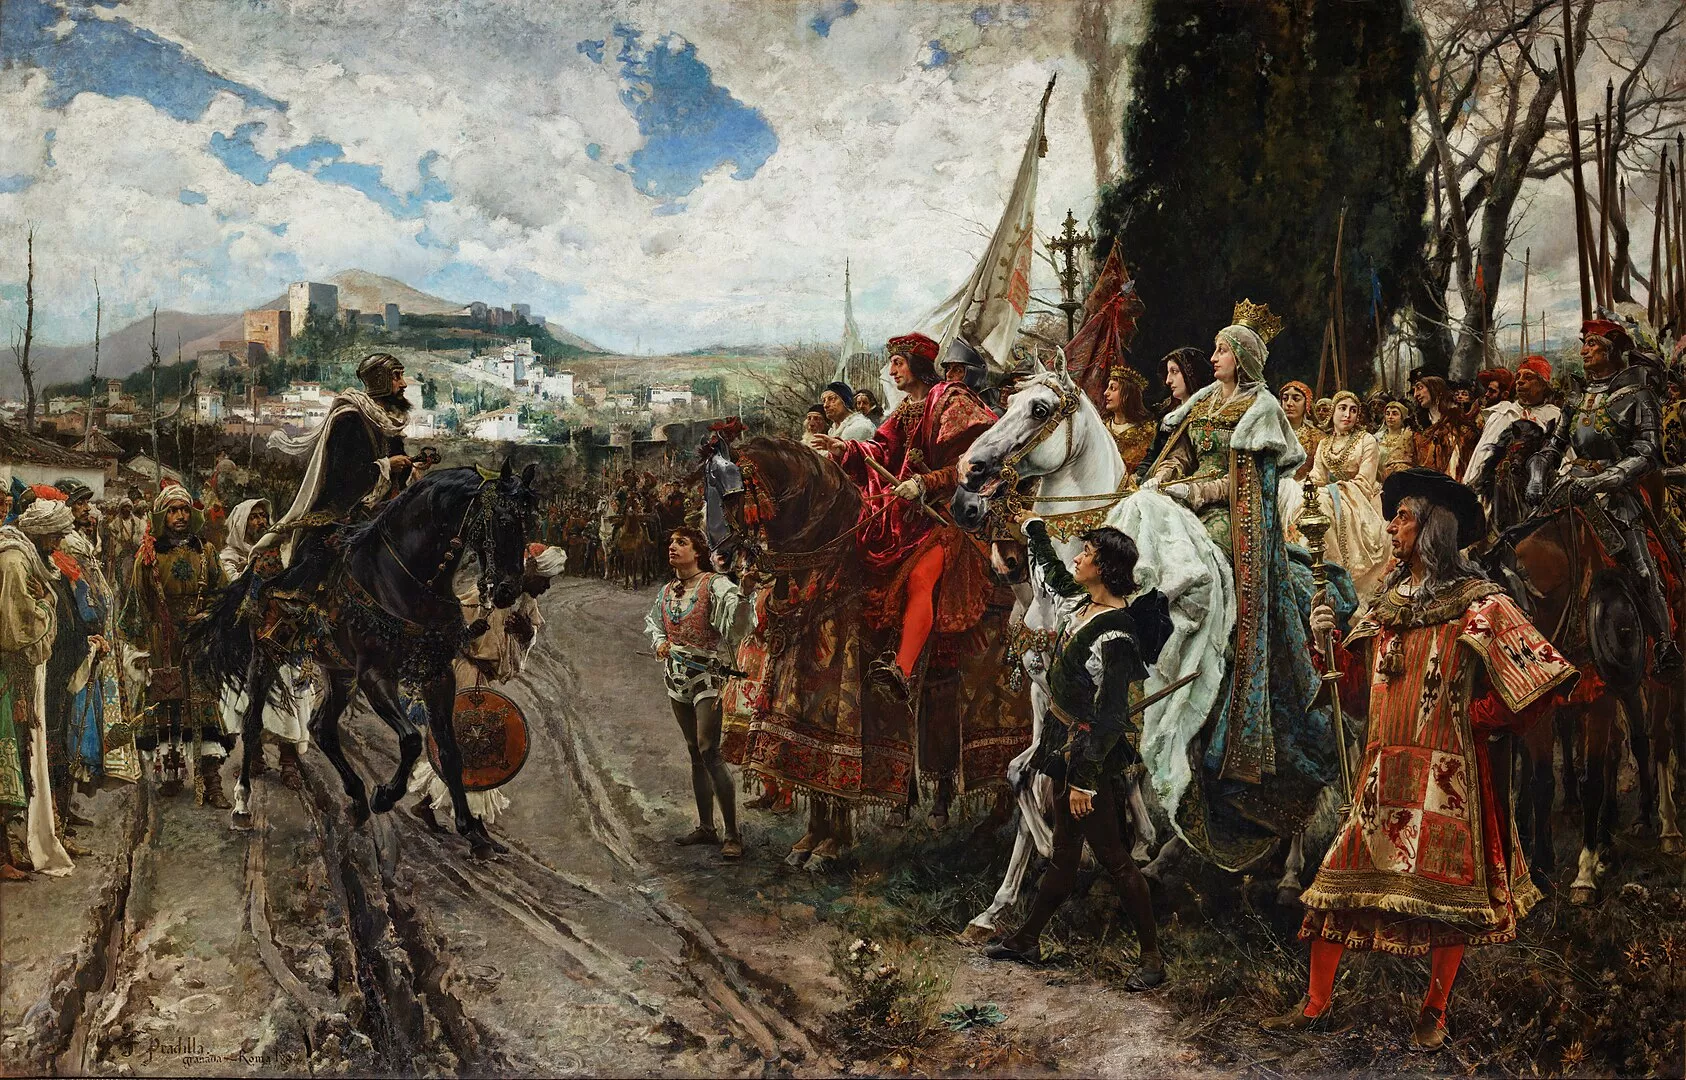 El quadre 'La rendició de Granada', del pintor Francisco Pradilla, representa la rendició d'aquest antic regne de mans del cabdill musulmà Boabdil